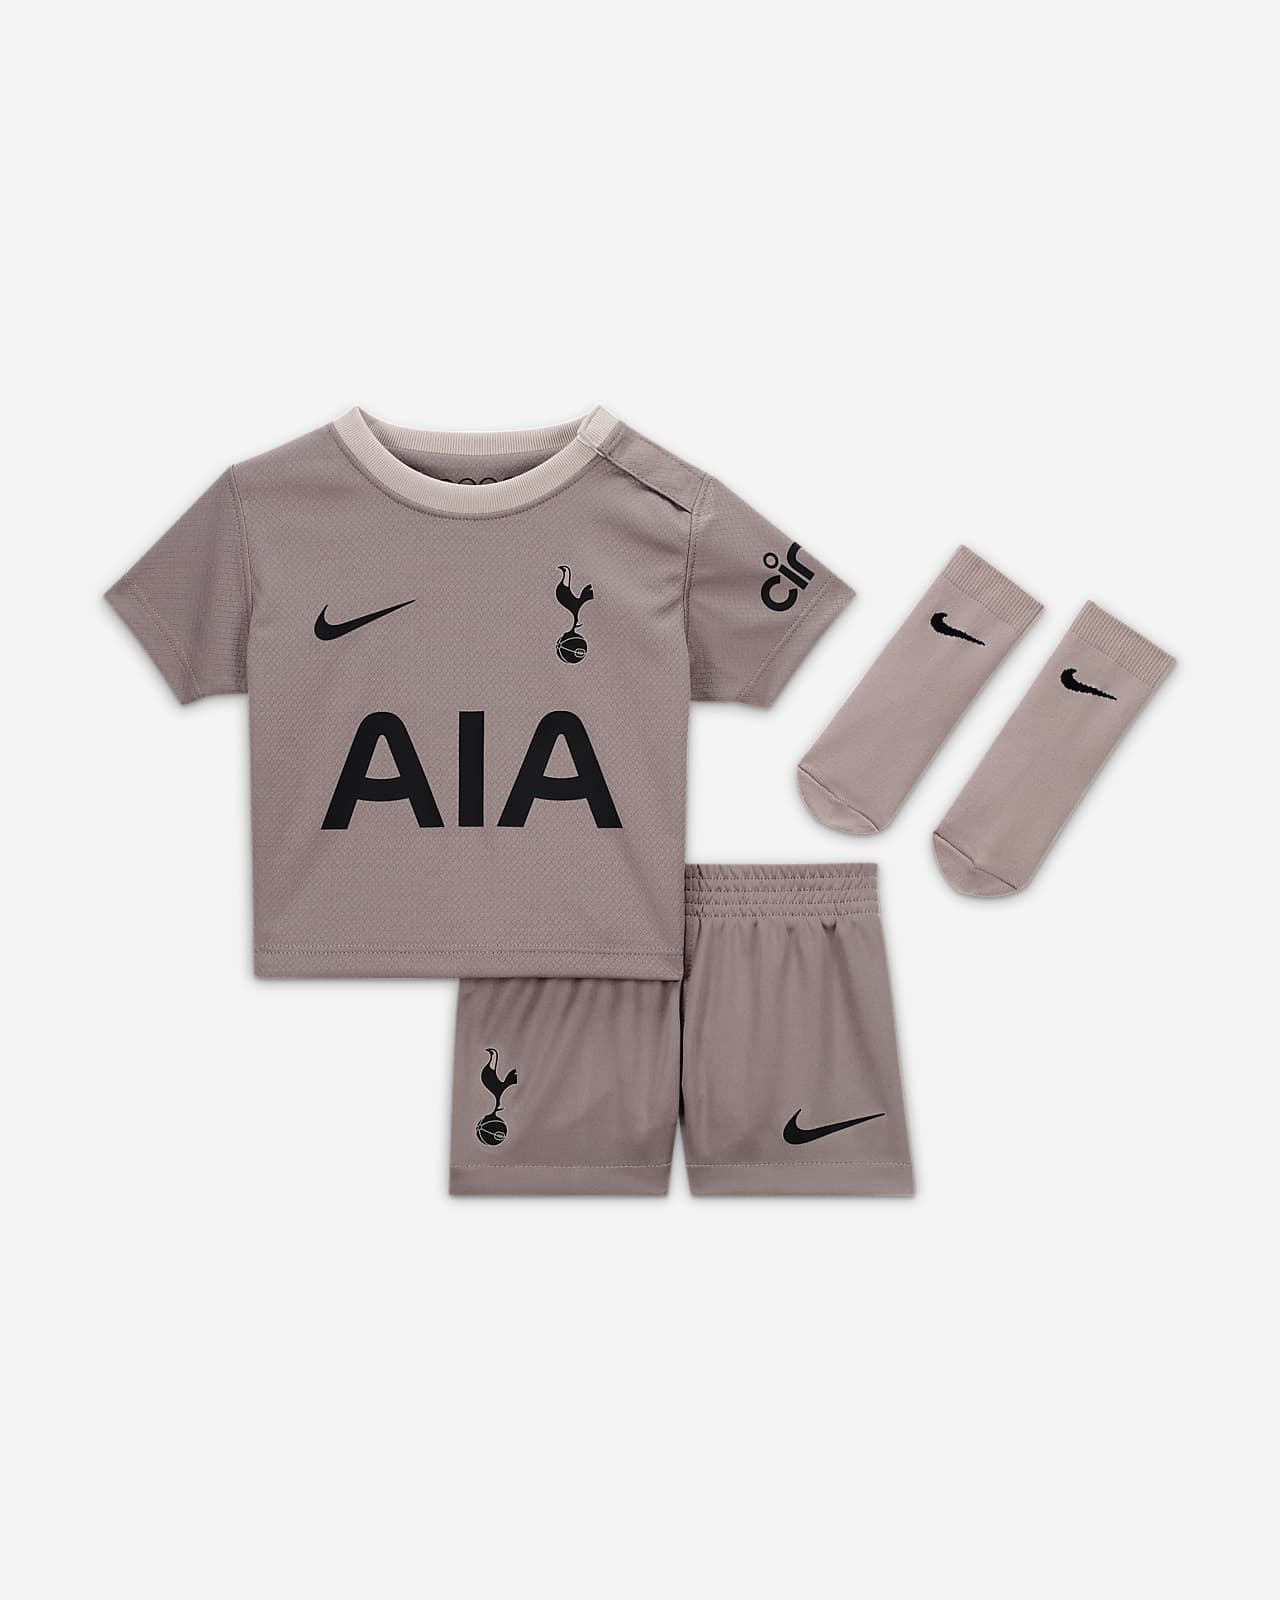 Tottenham Hotspur Kits & Shirts 2023/24. Nike ZA